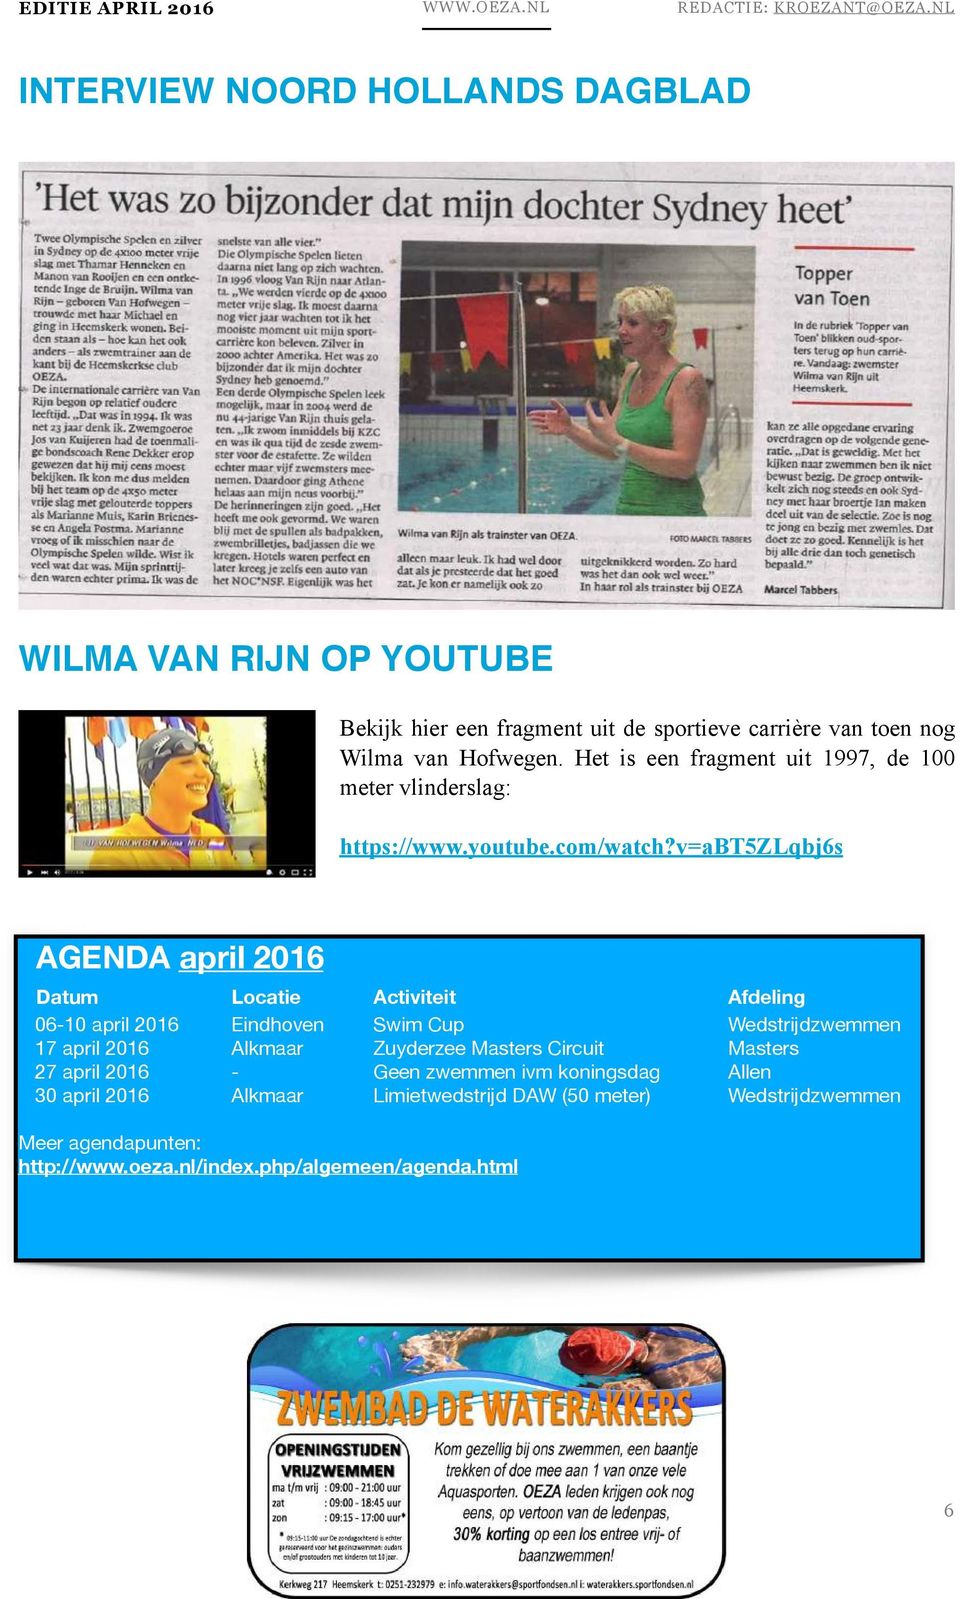 v=abt5zlqbj6s AGENDA april 2016 Datum Locatie Activiteit Afdeling 06-10 april 2016 Eindhoven Swim Cup Wedstrijdzwemmen 17 april 2016 Alkmaar